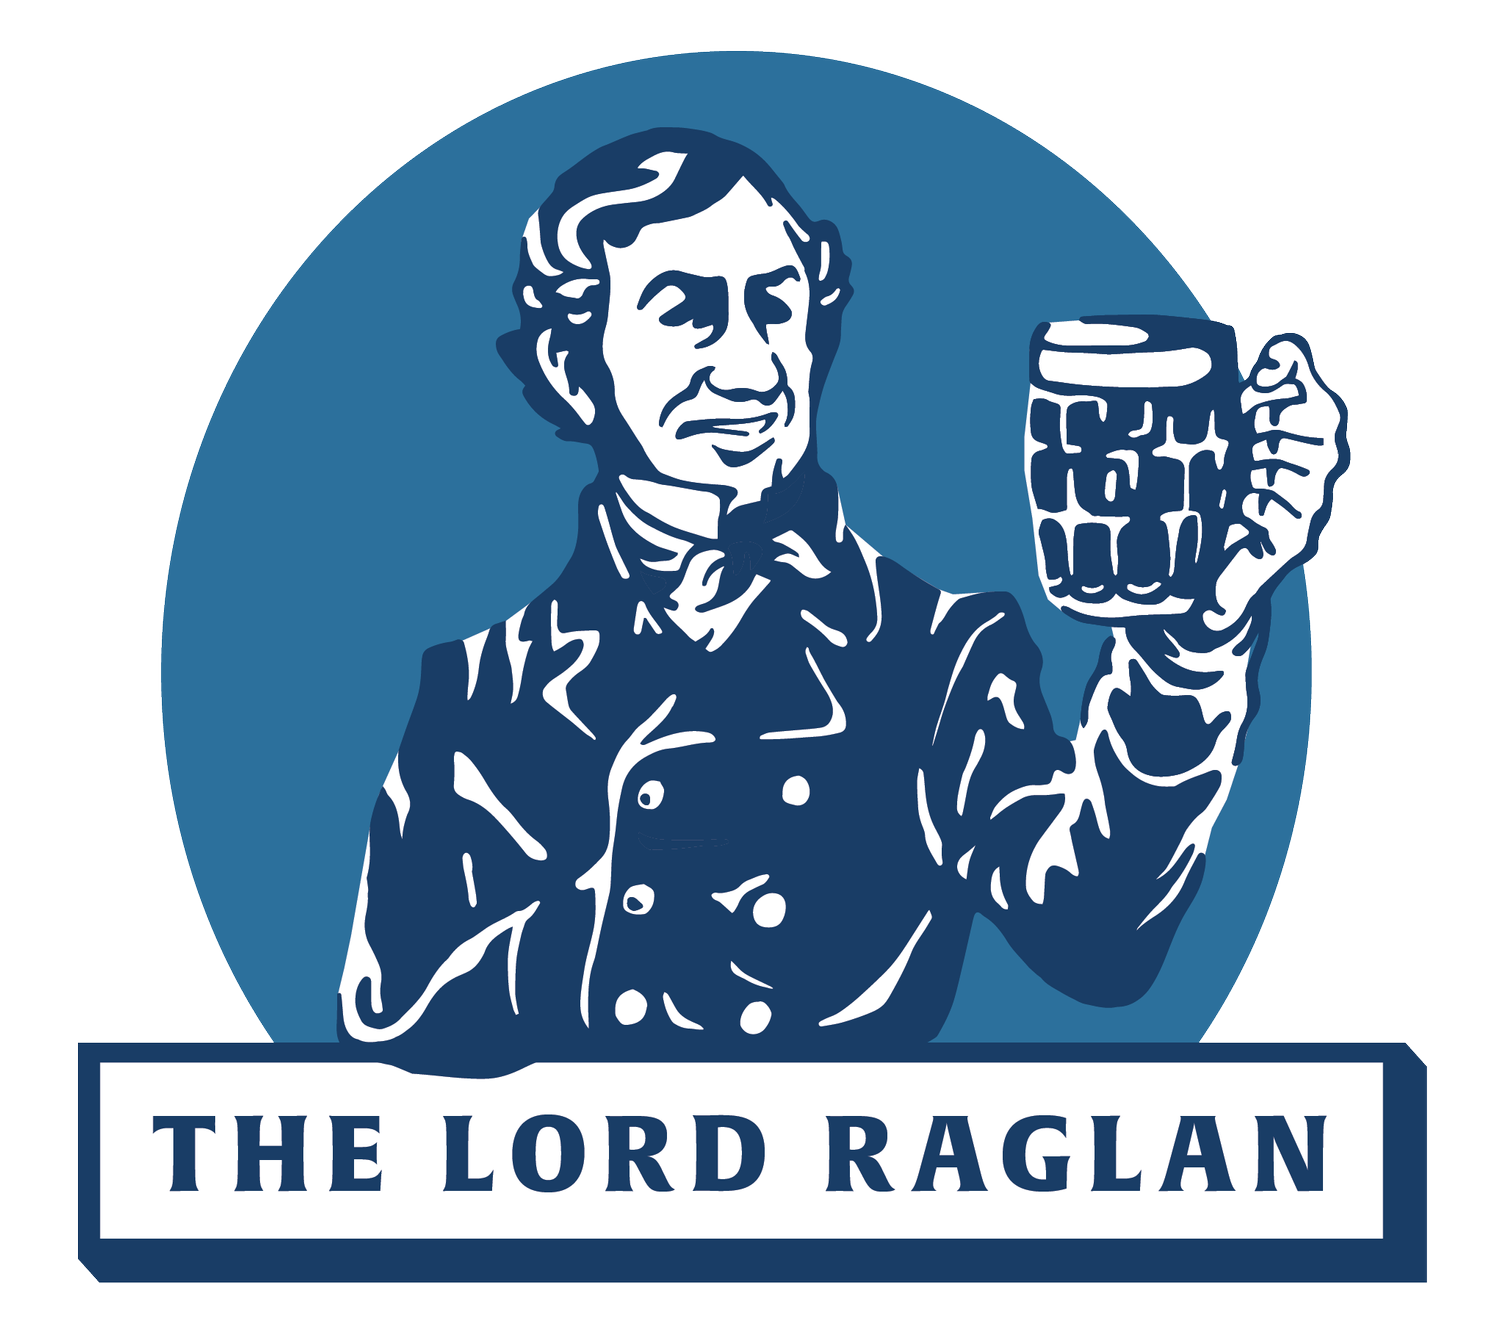 The Lord Raglan